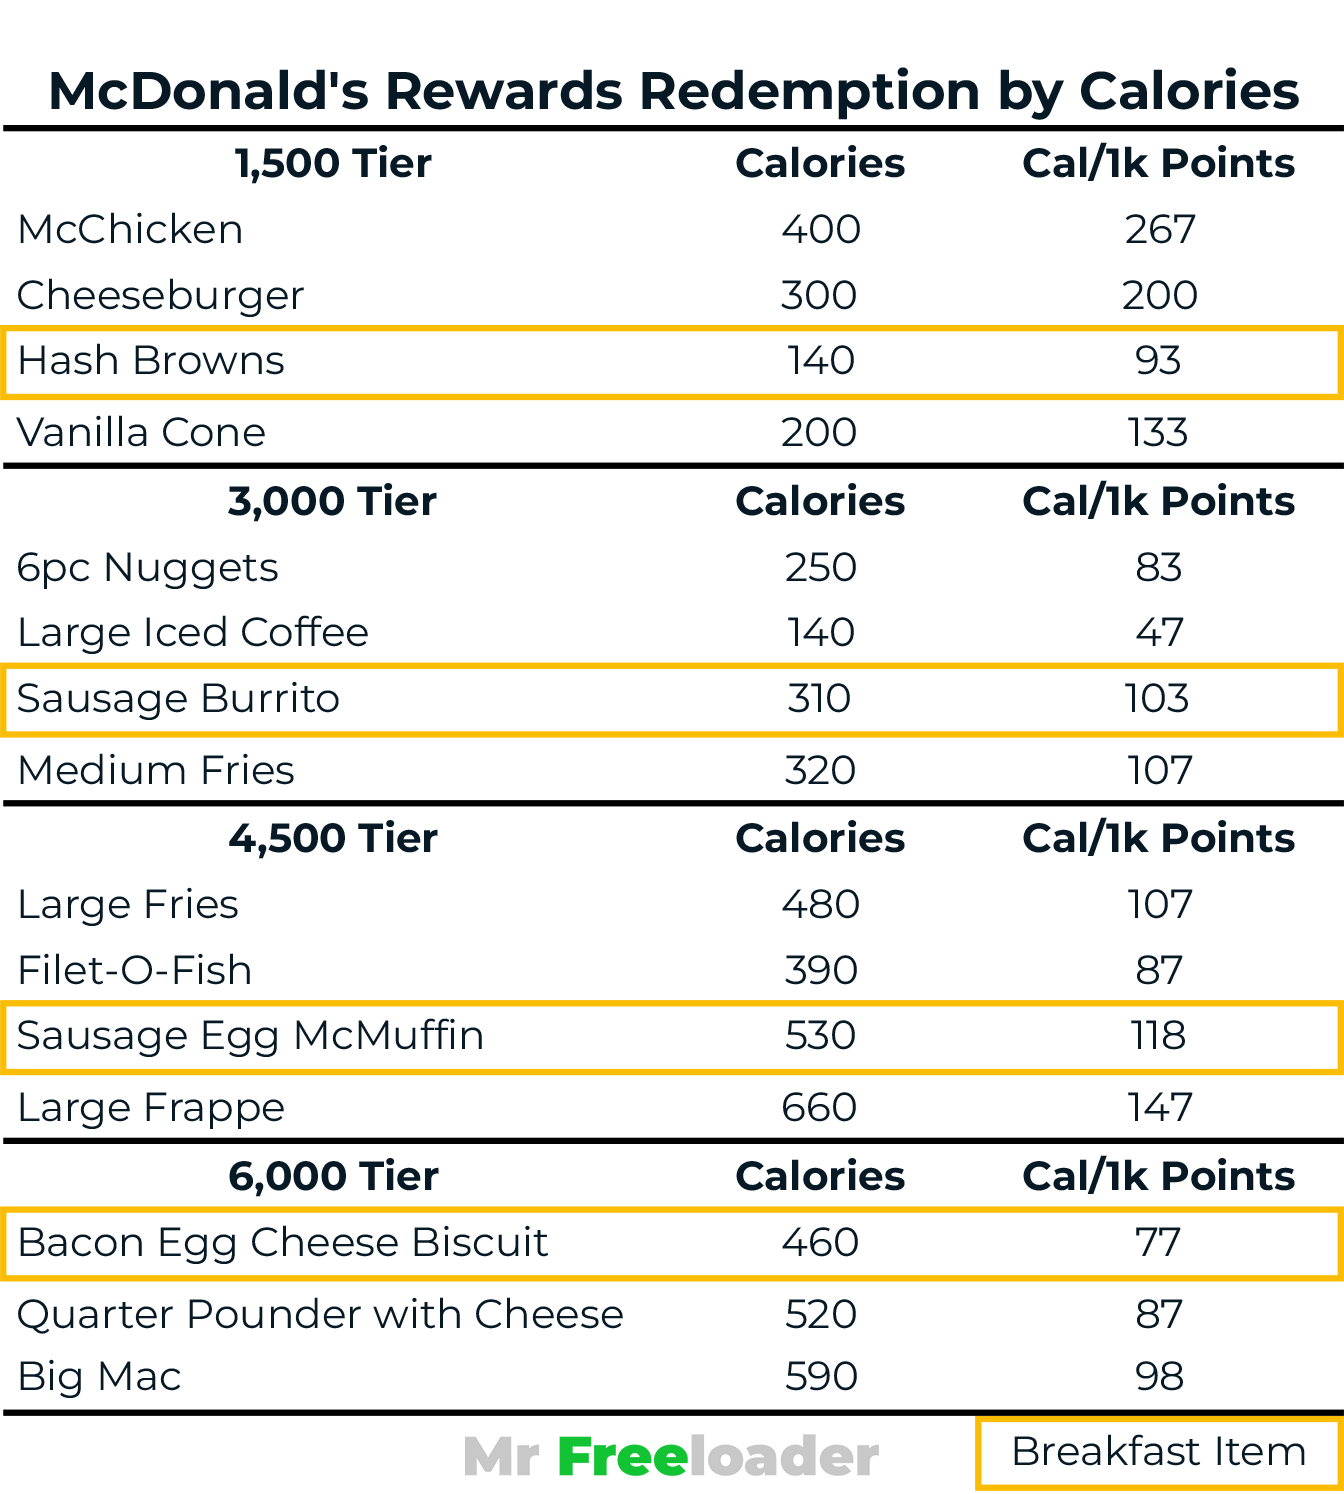 McDonald's Rewards Best Redemption by Calories